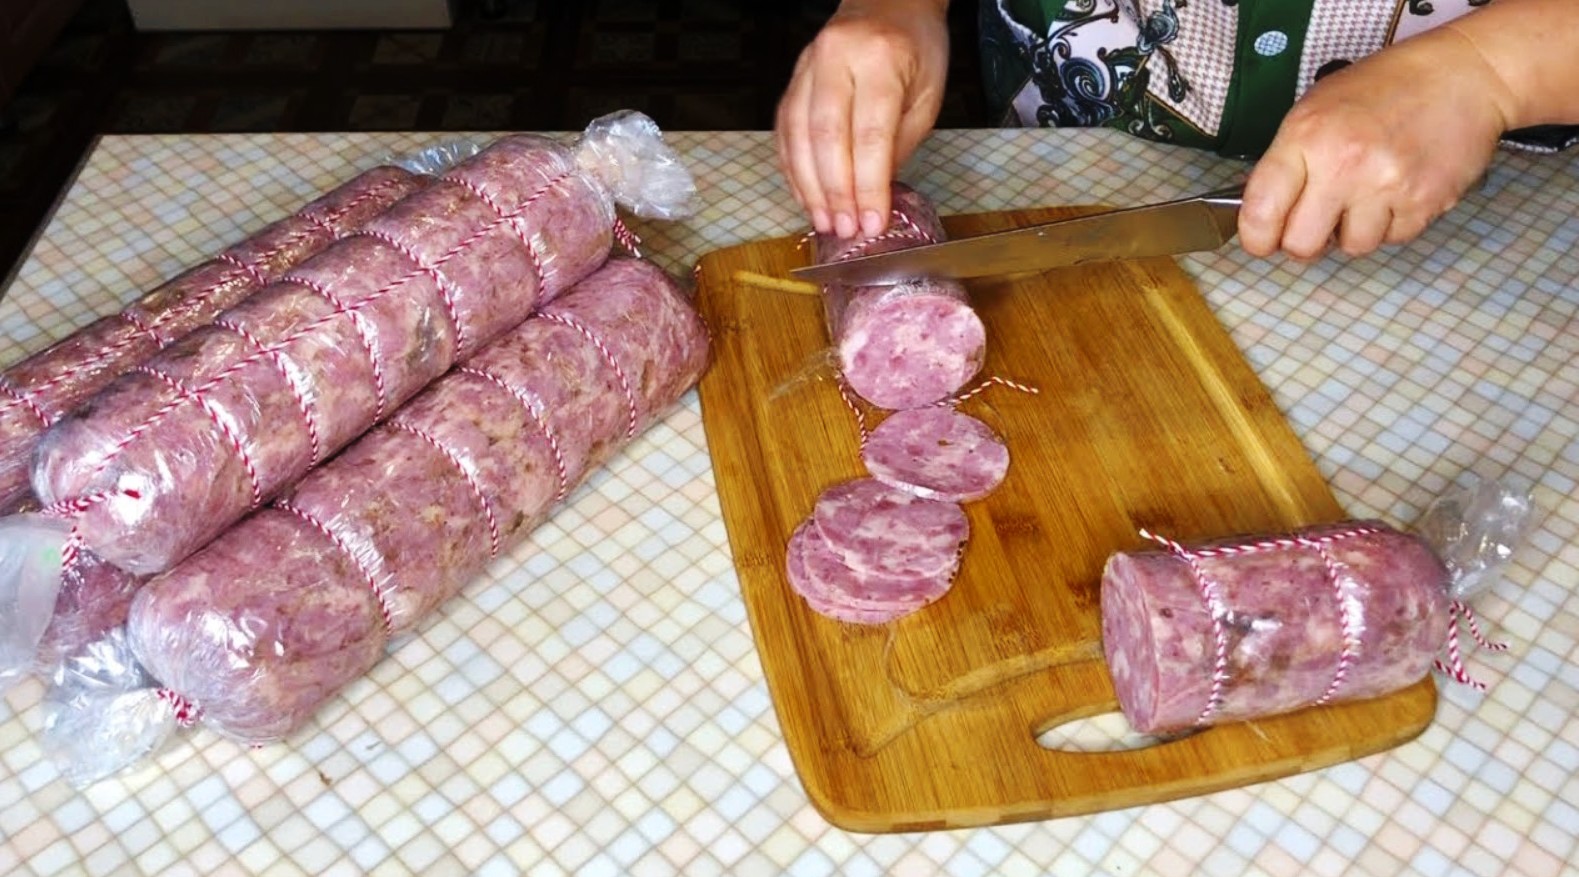 Домашняя колбаса из свинины в кишках рецепт с фото в домашних условиях с нитритной солью